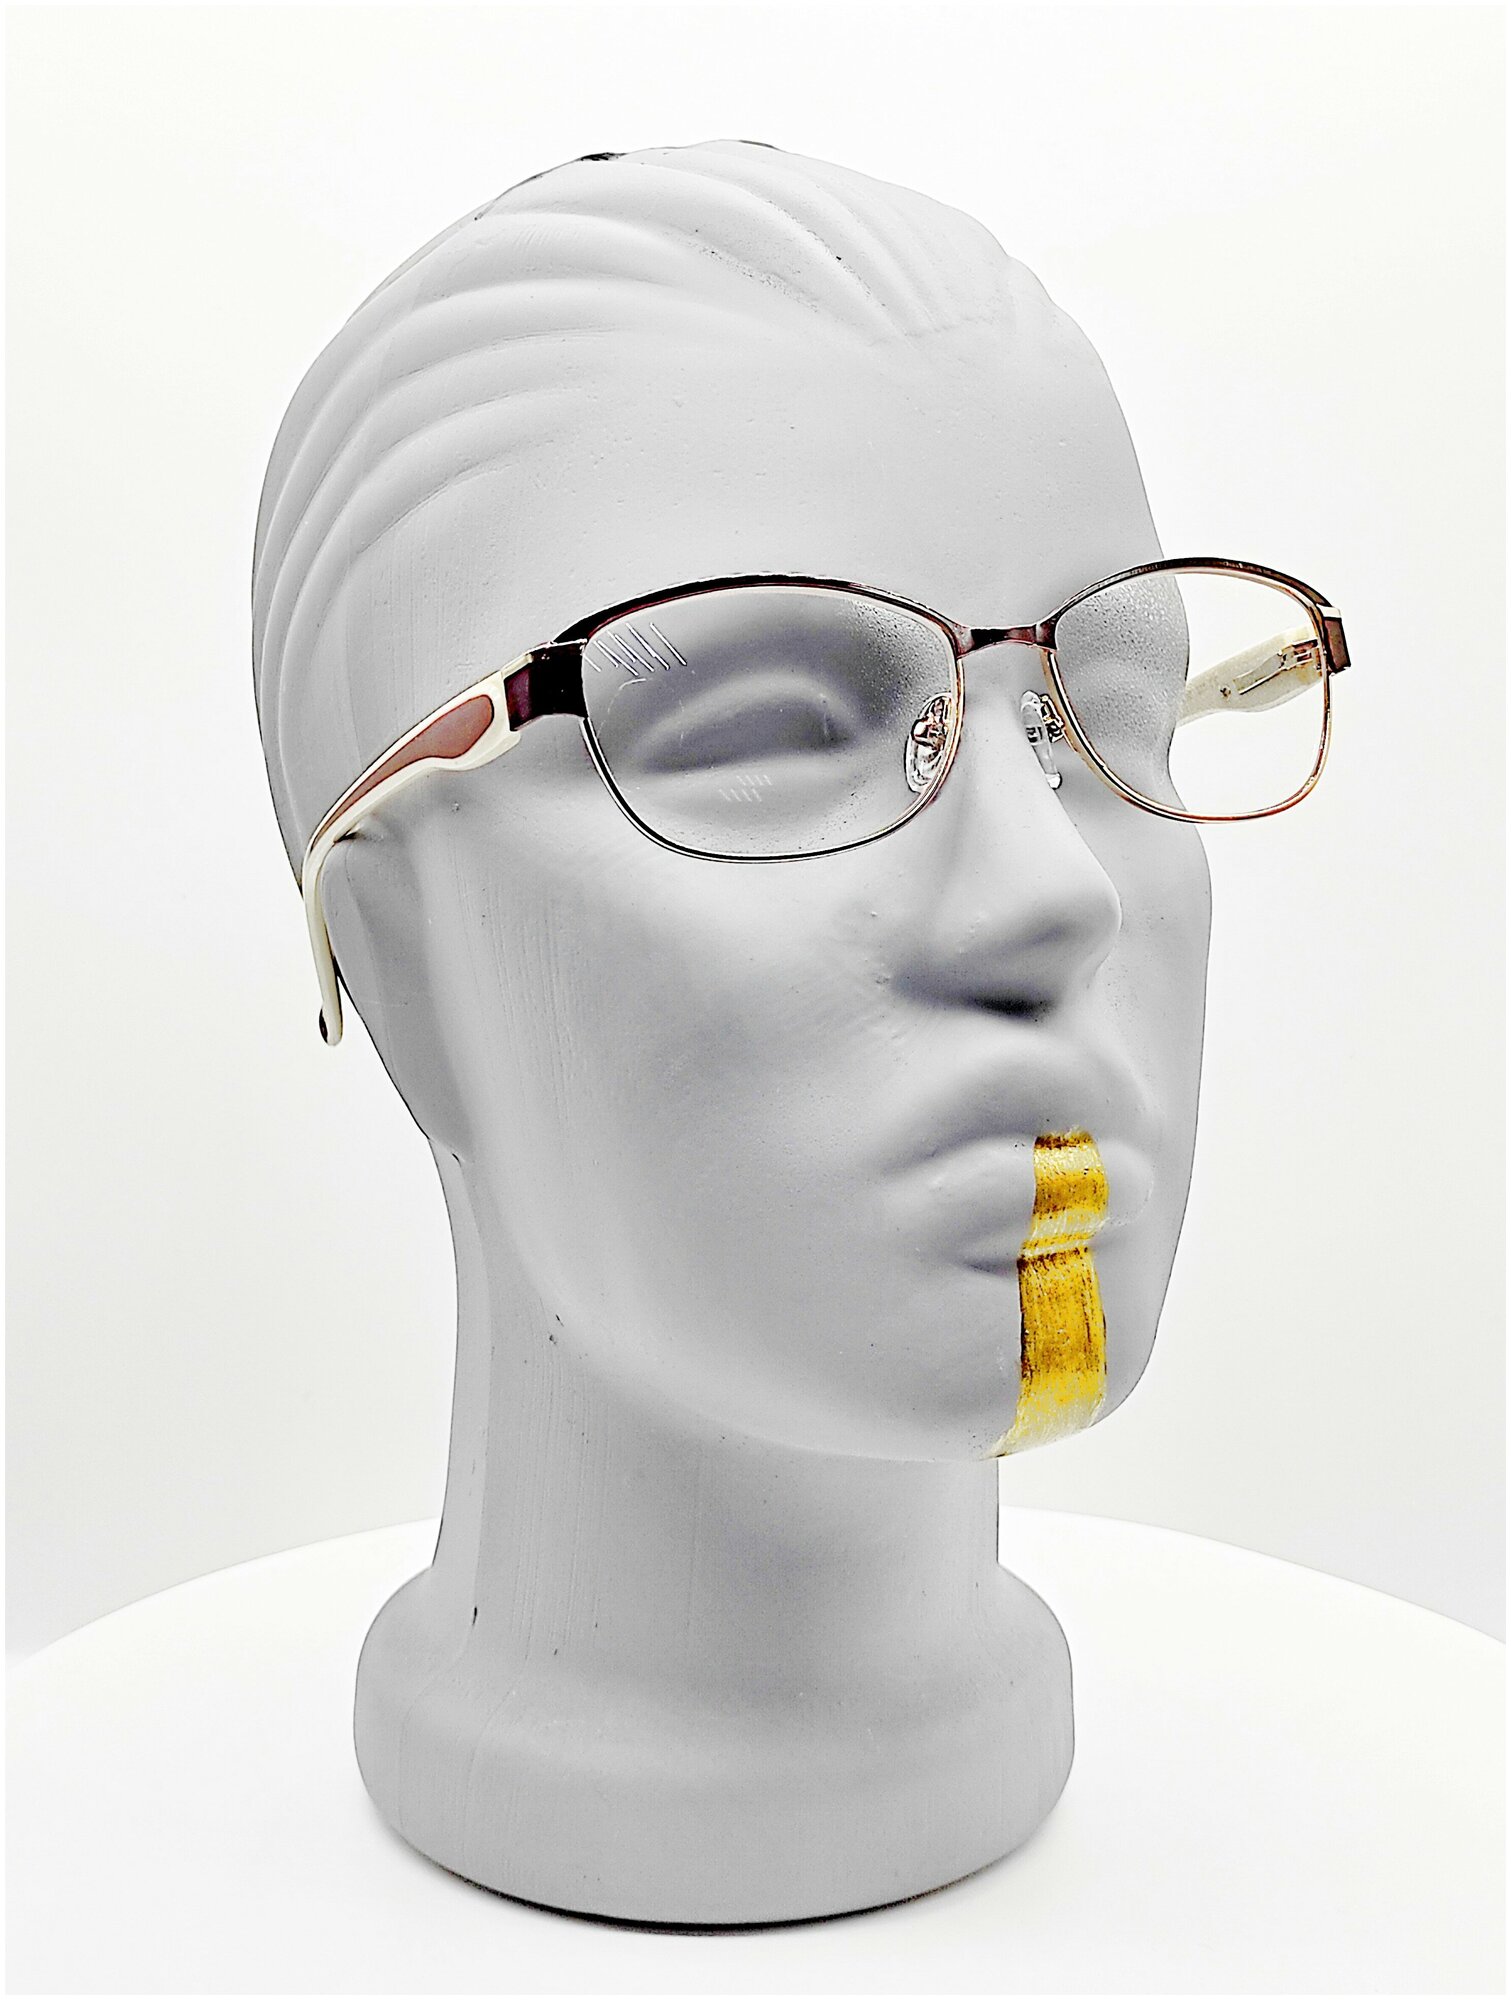 Cтильные готовые очки с UV защитой для красивого взгляда +1,50